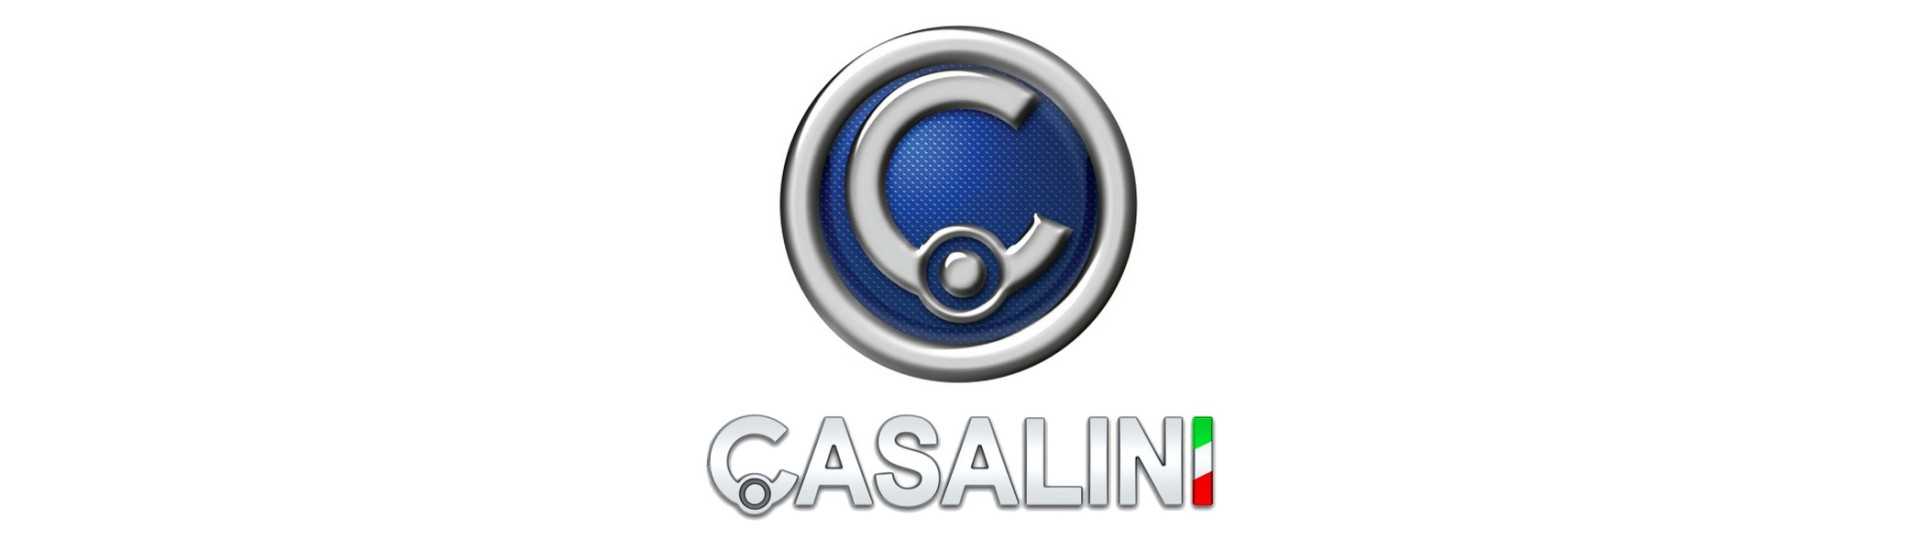 Handbromskabel till bästa prisbil utan tillstånd Casalini